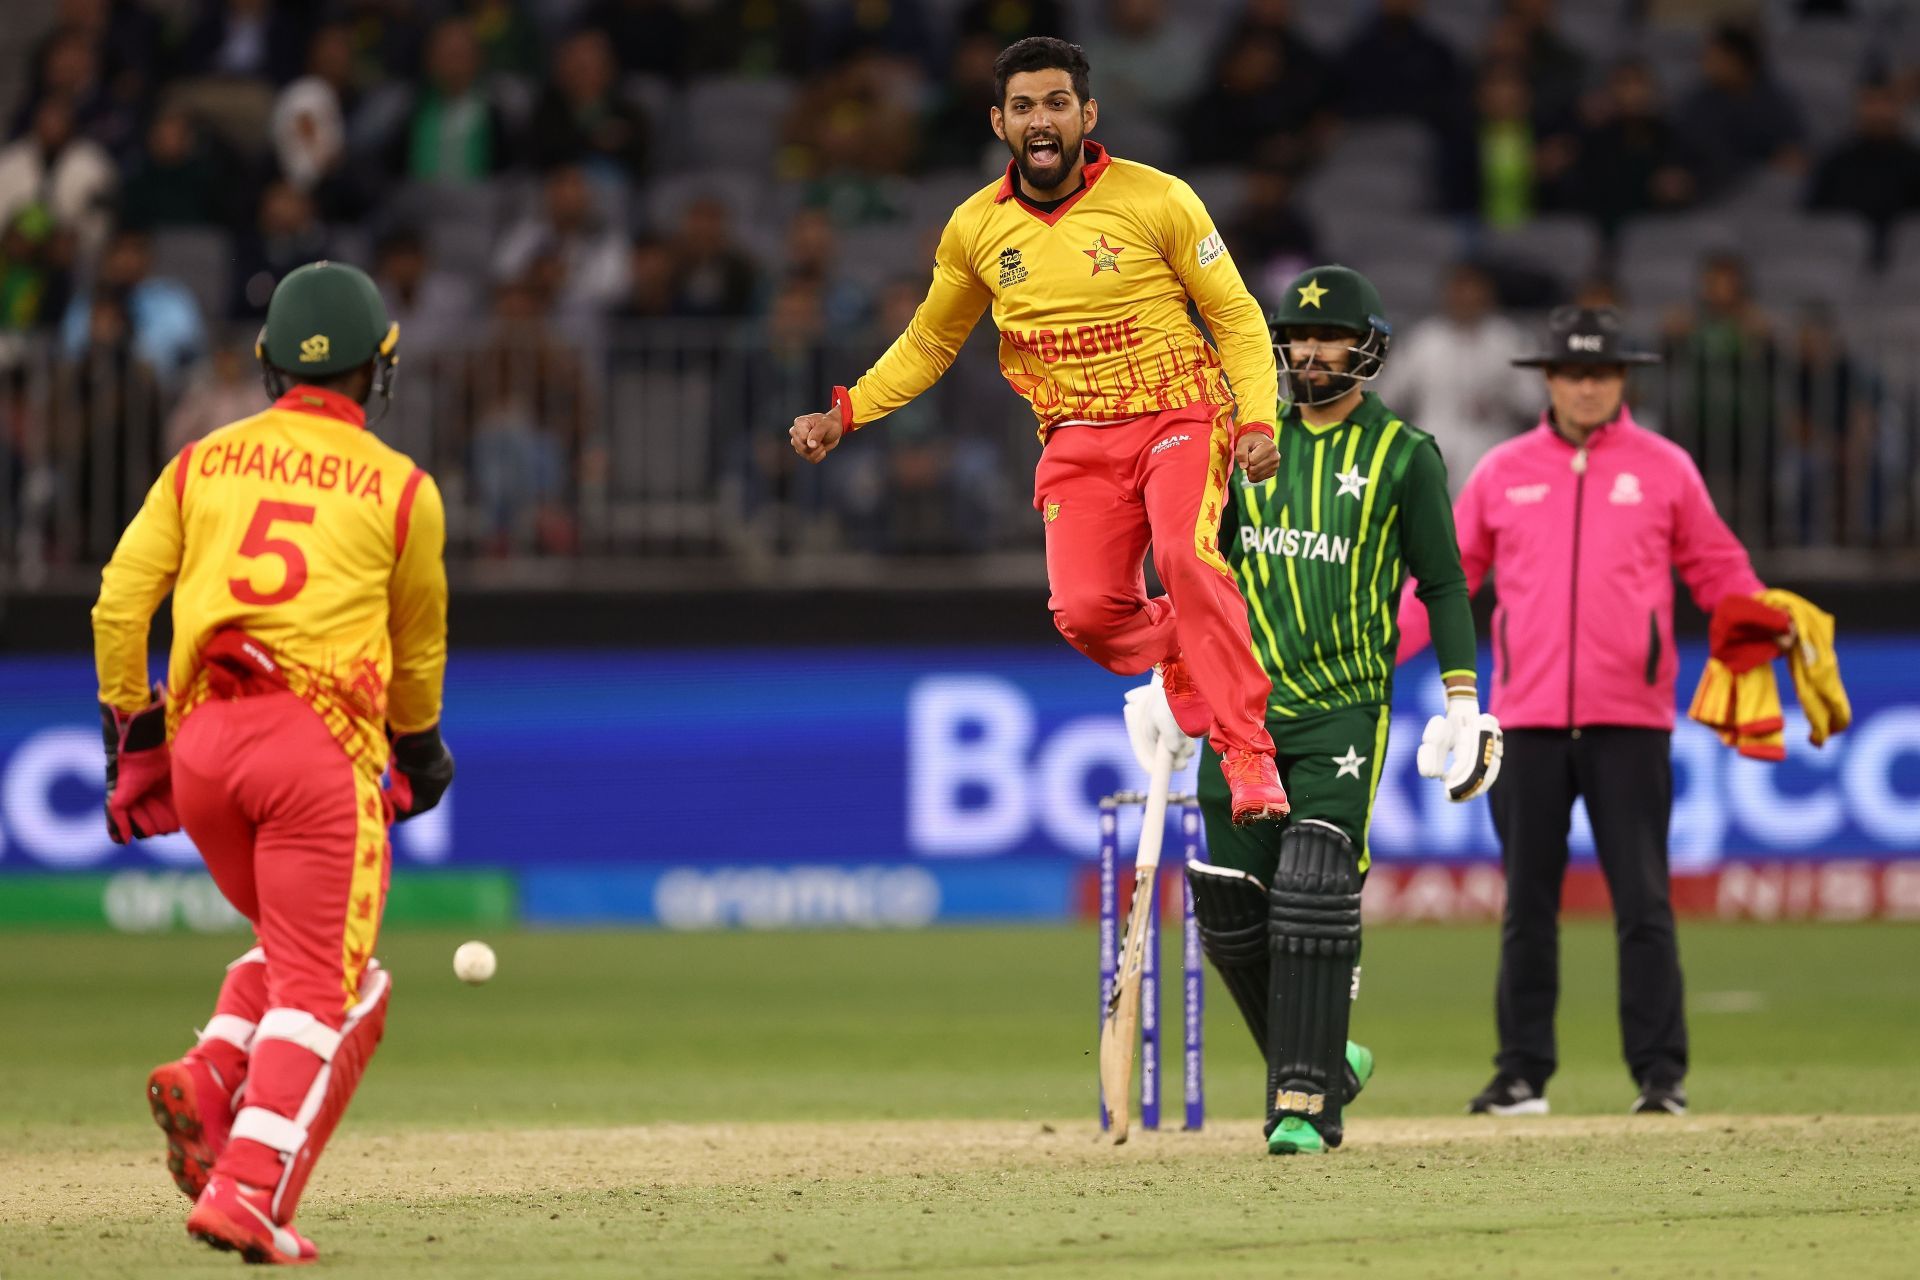 Sikandar Raza celebrates a wicket. (Credits: Getty)